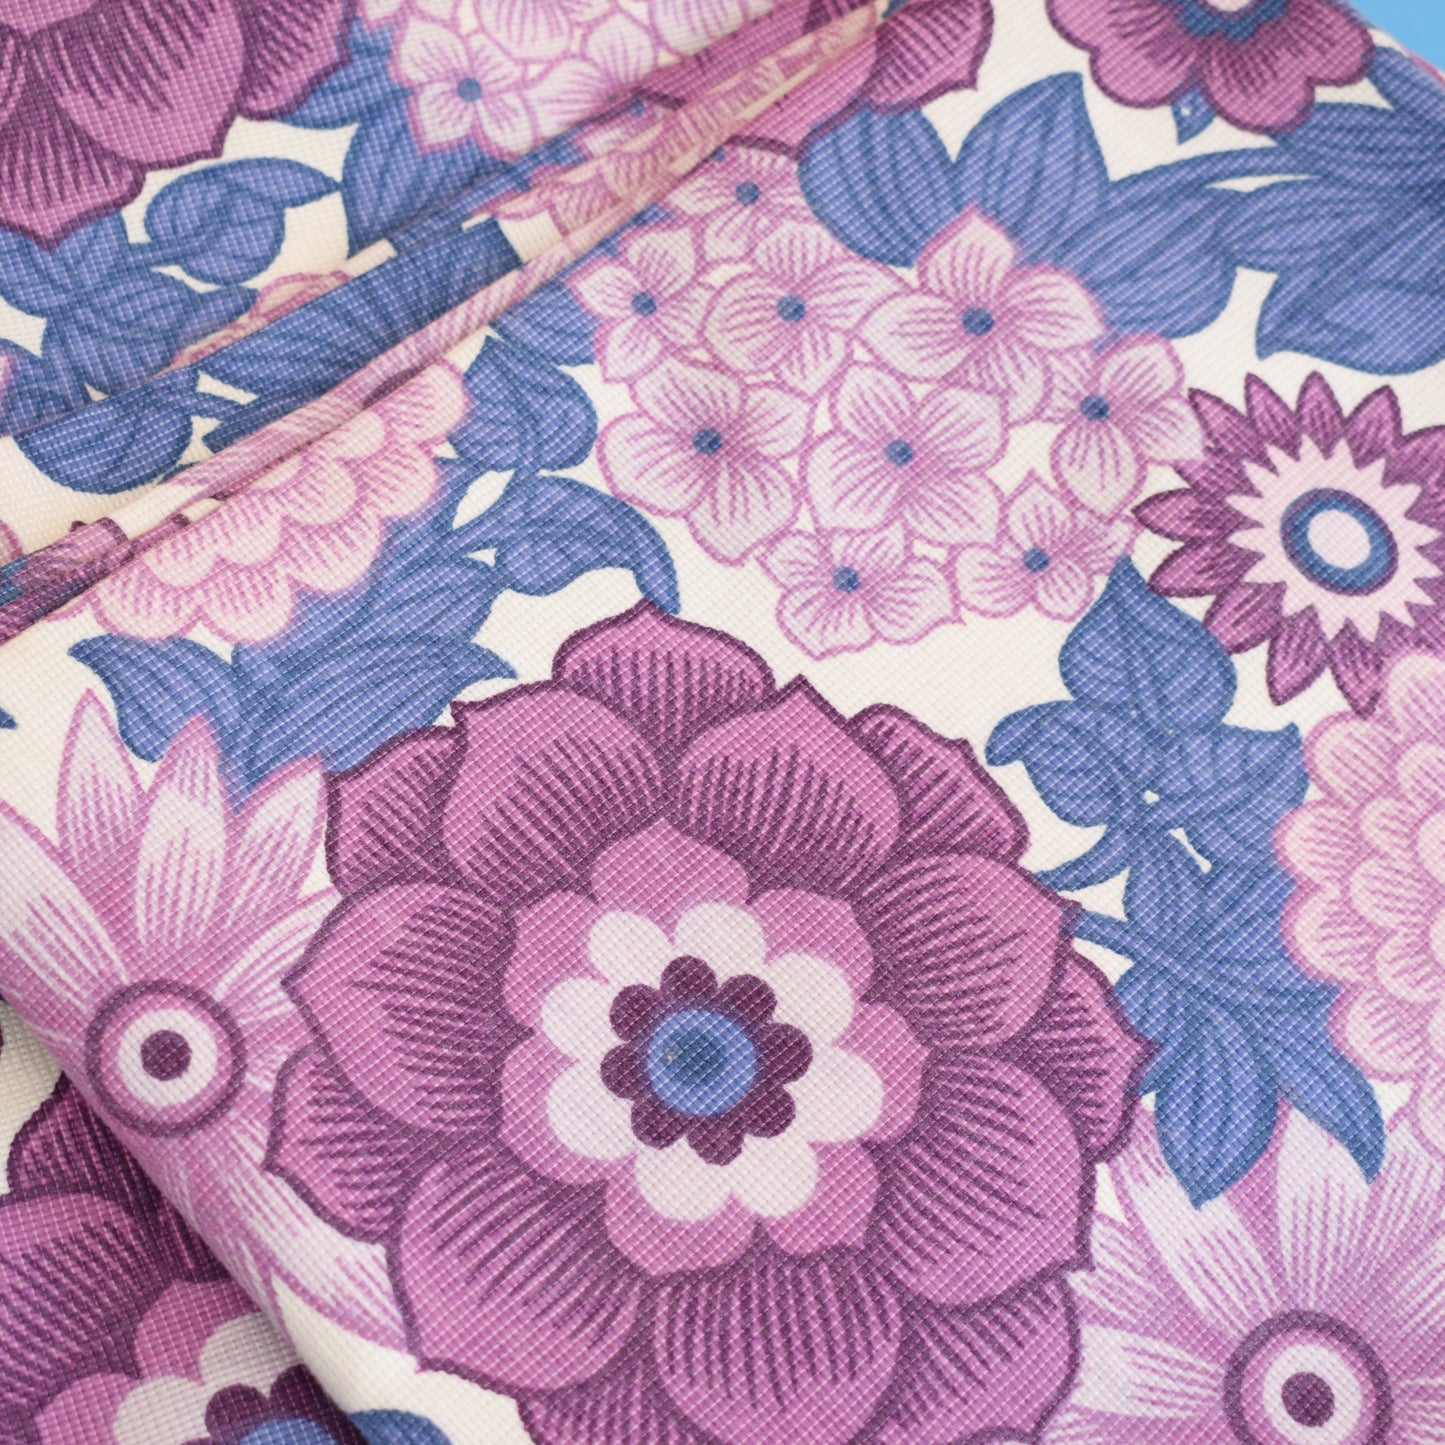 Vintage 1960s Curtains - Flower Power - M&S - Purple